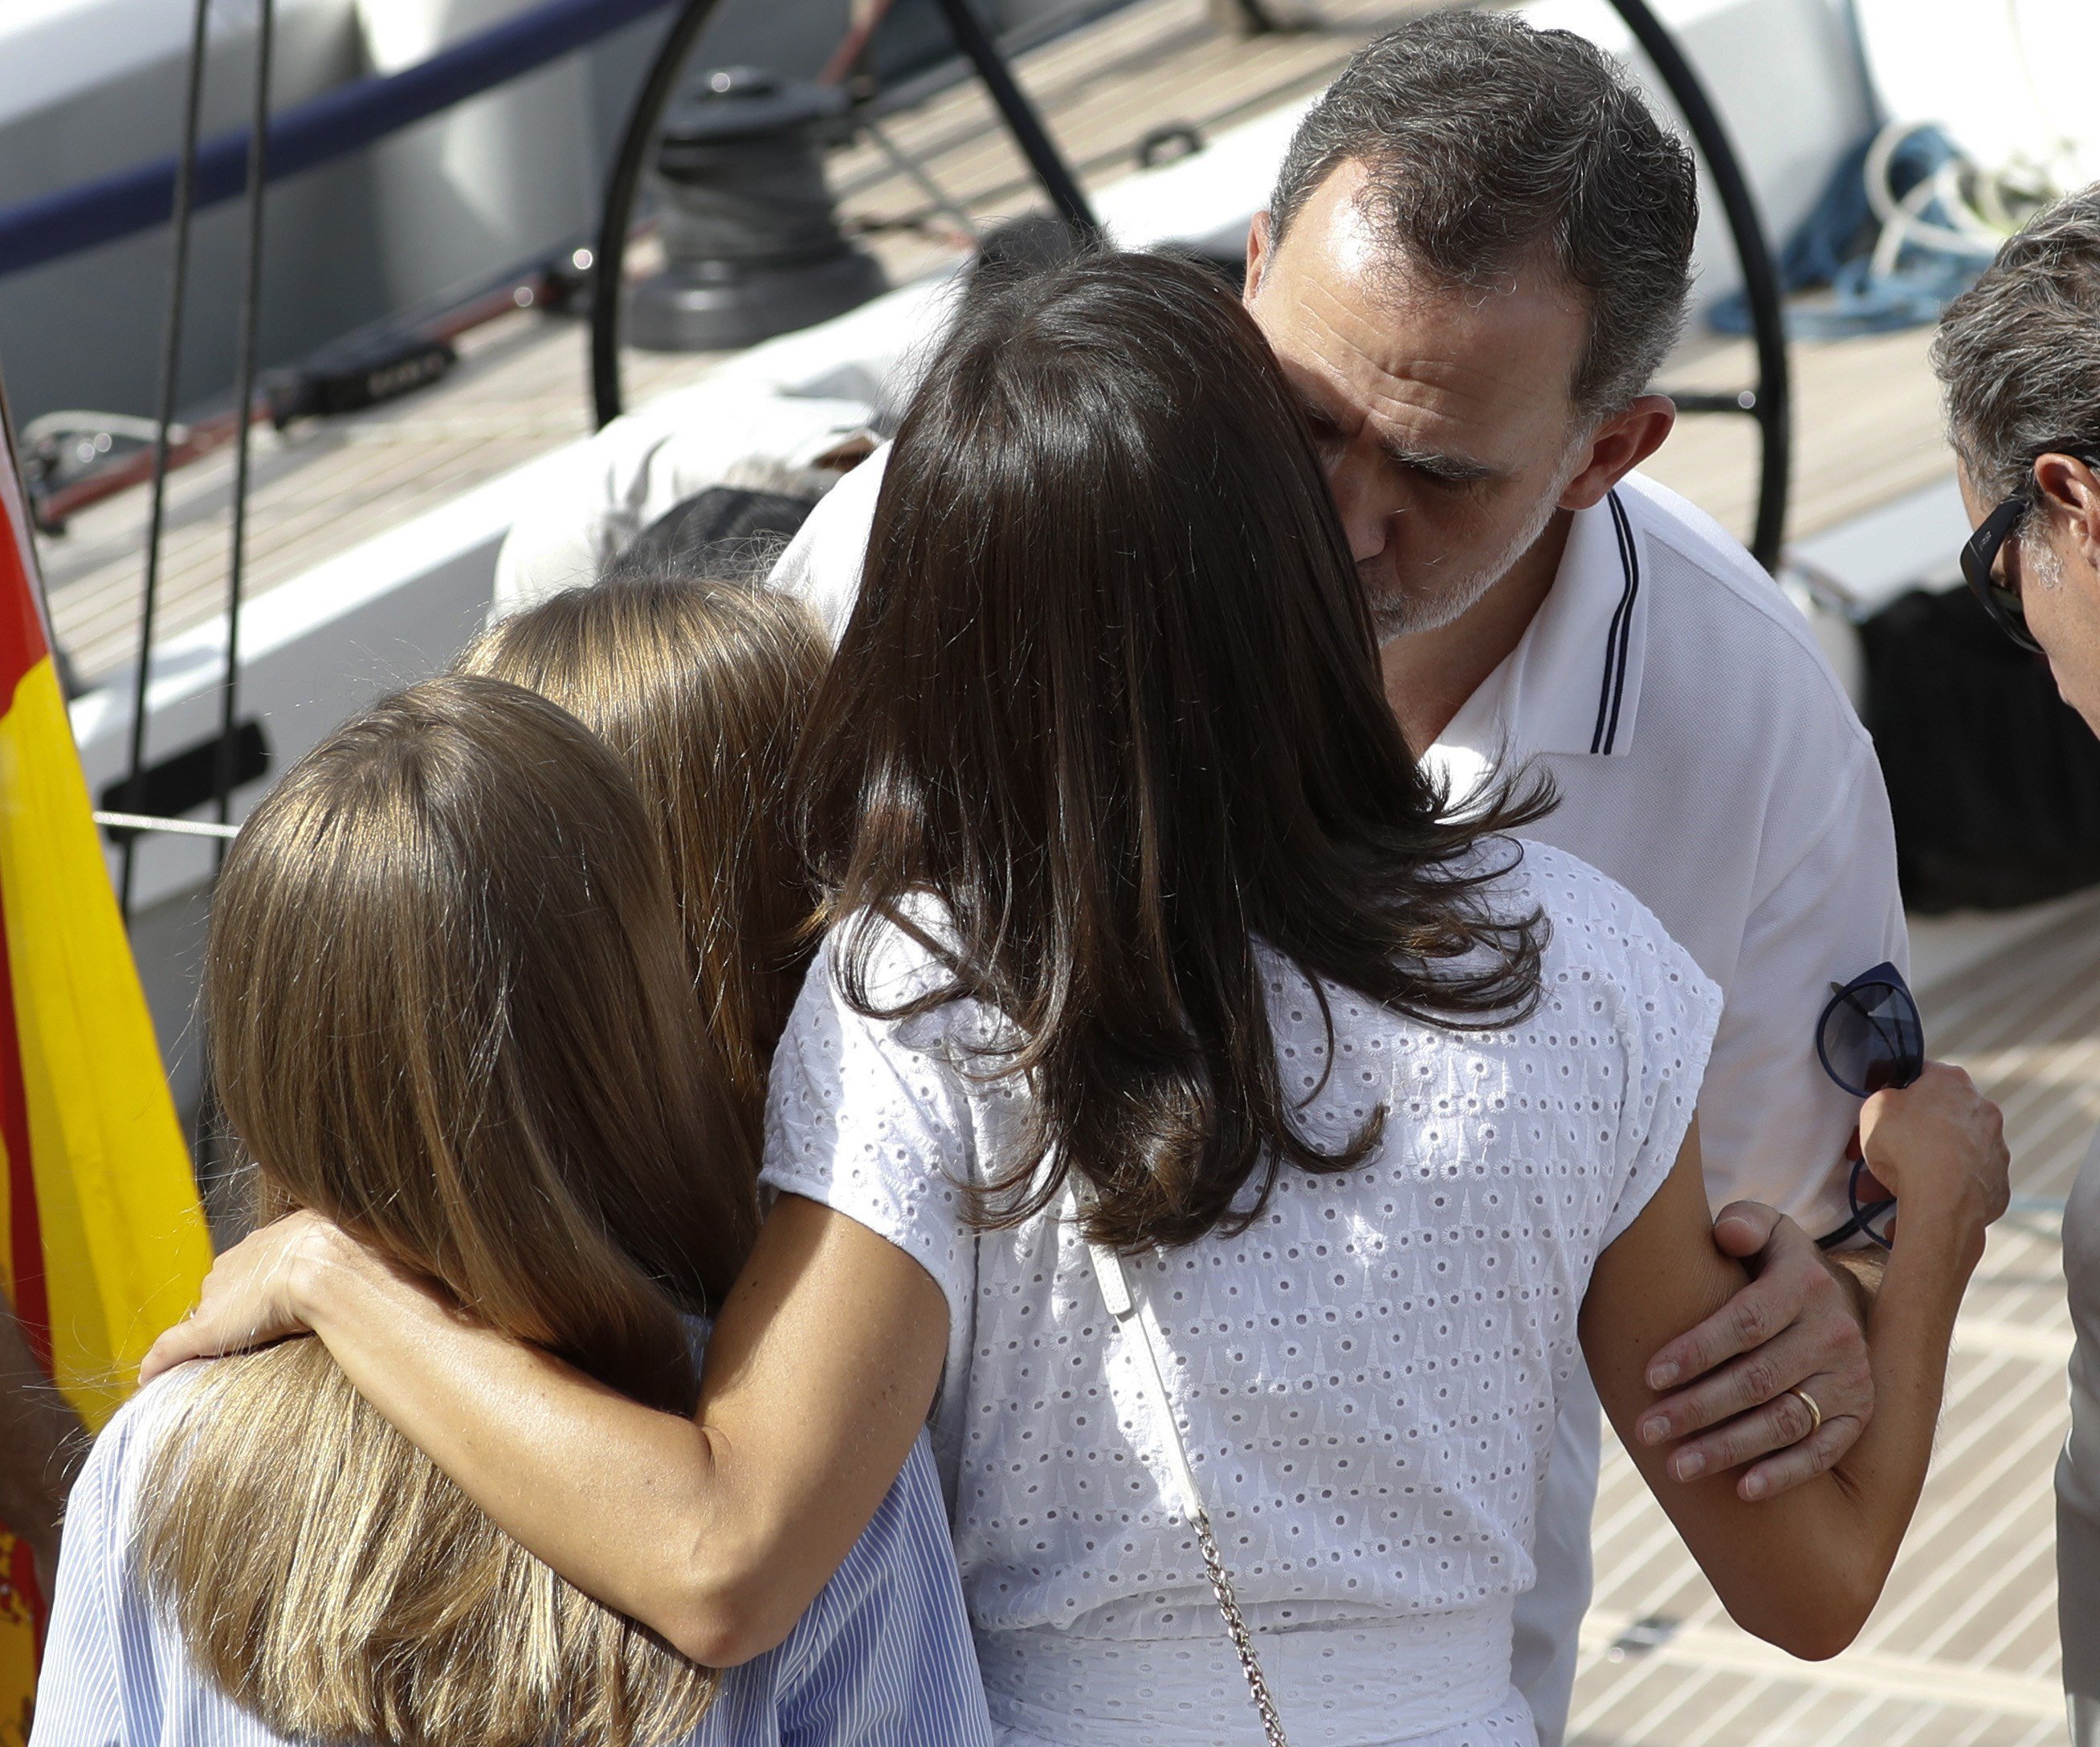 FOTOS: Felip saluda la seva fillola en biquini, que s'ha de tapar avergonyida